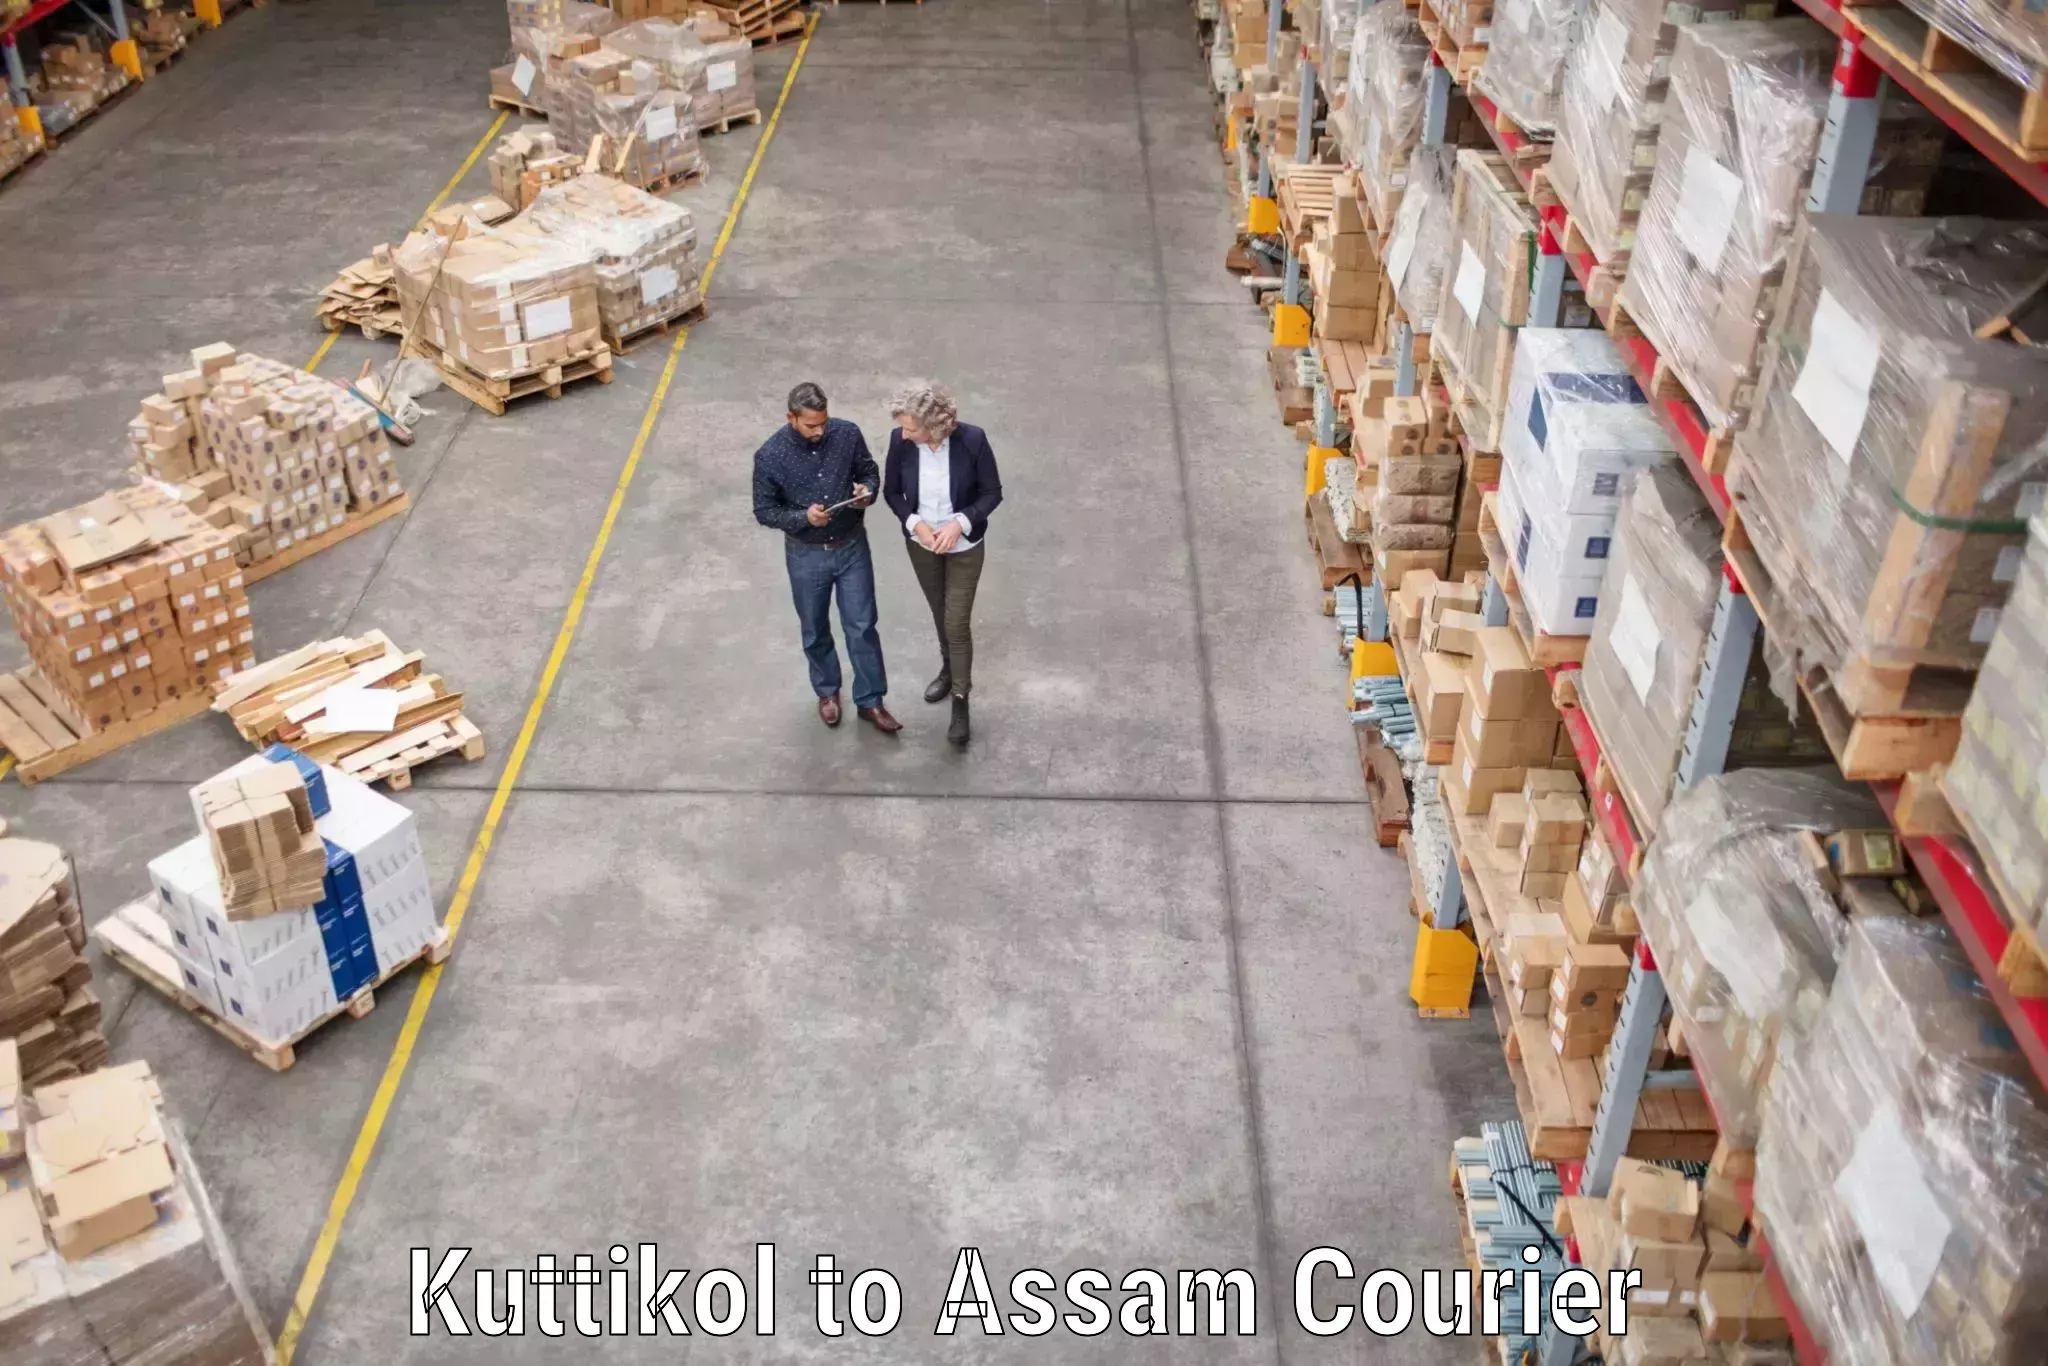 Furniture transport specialists Kuttikol to Assam